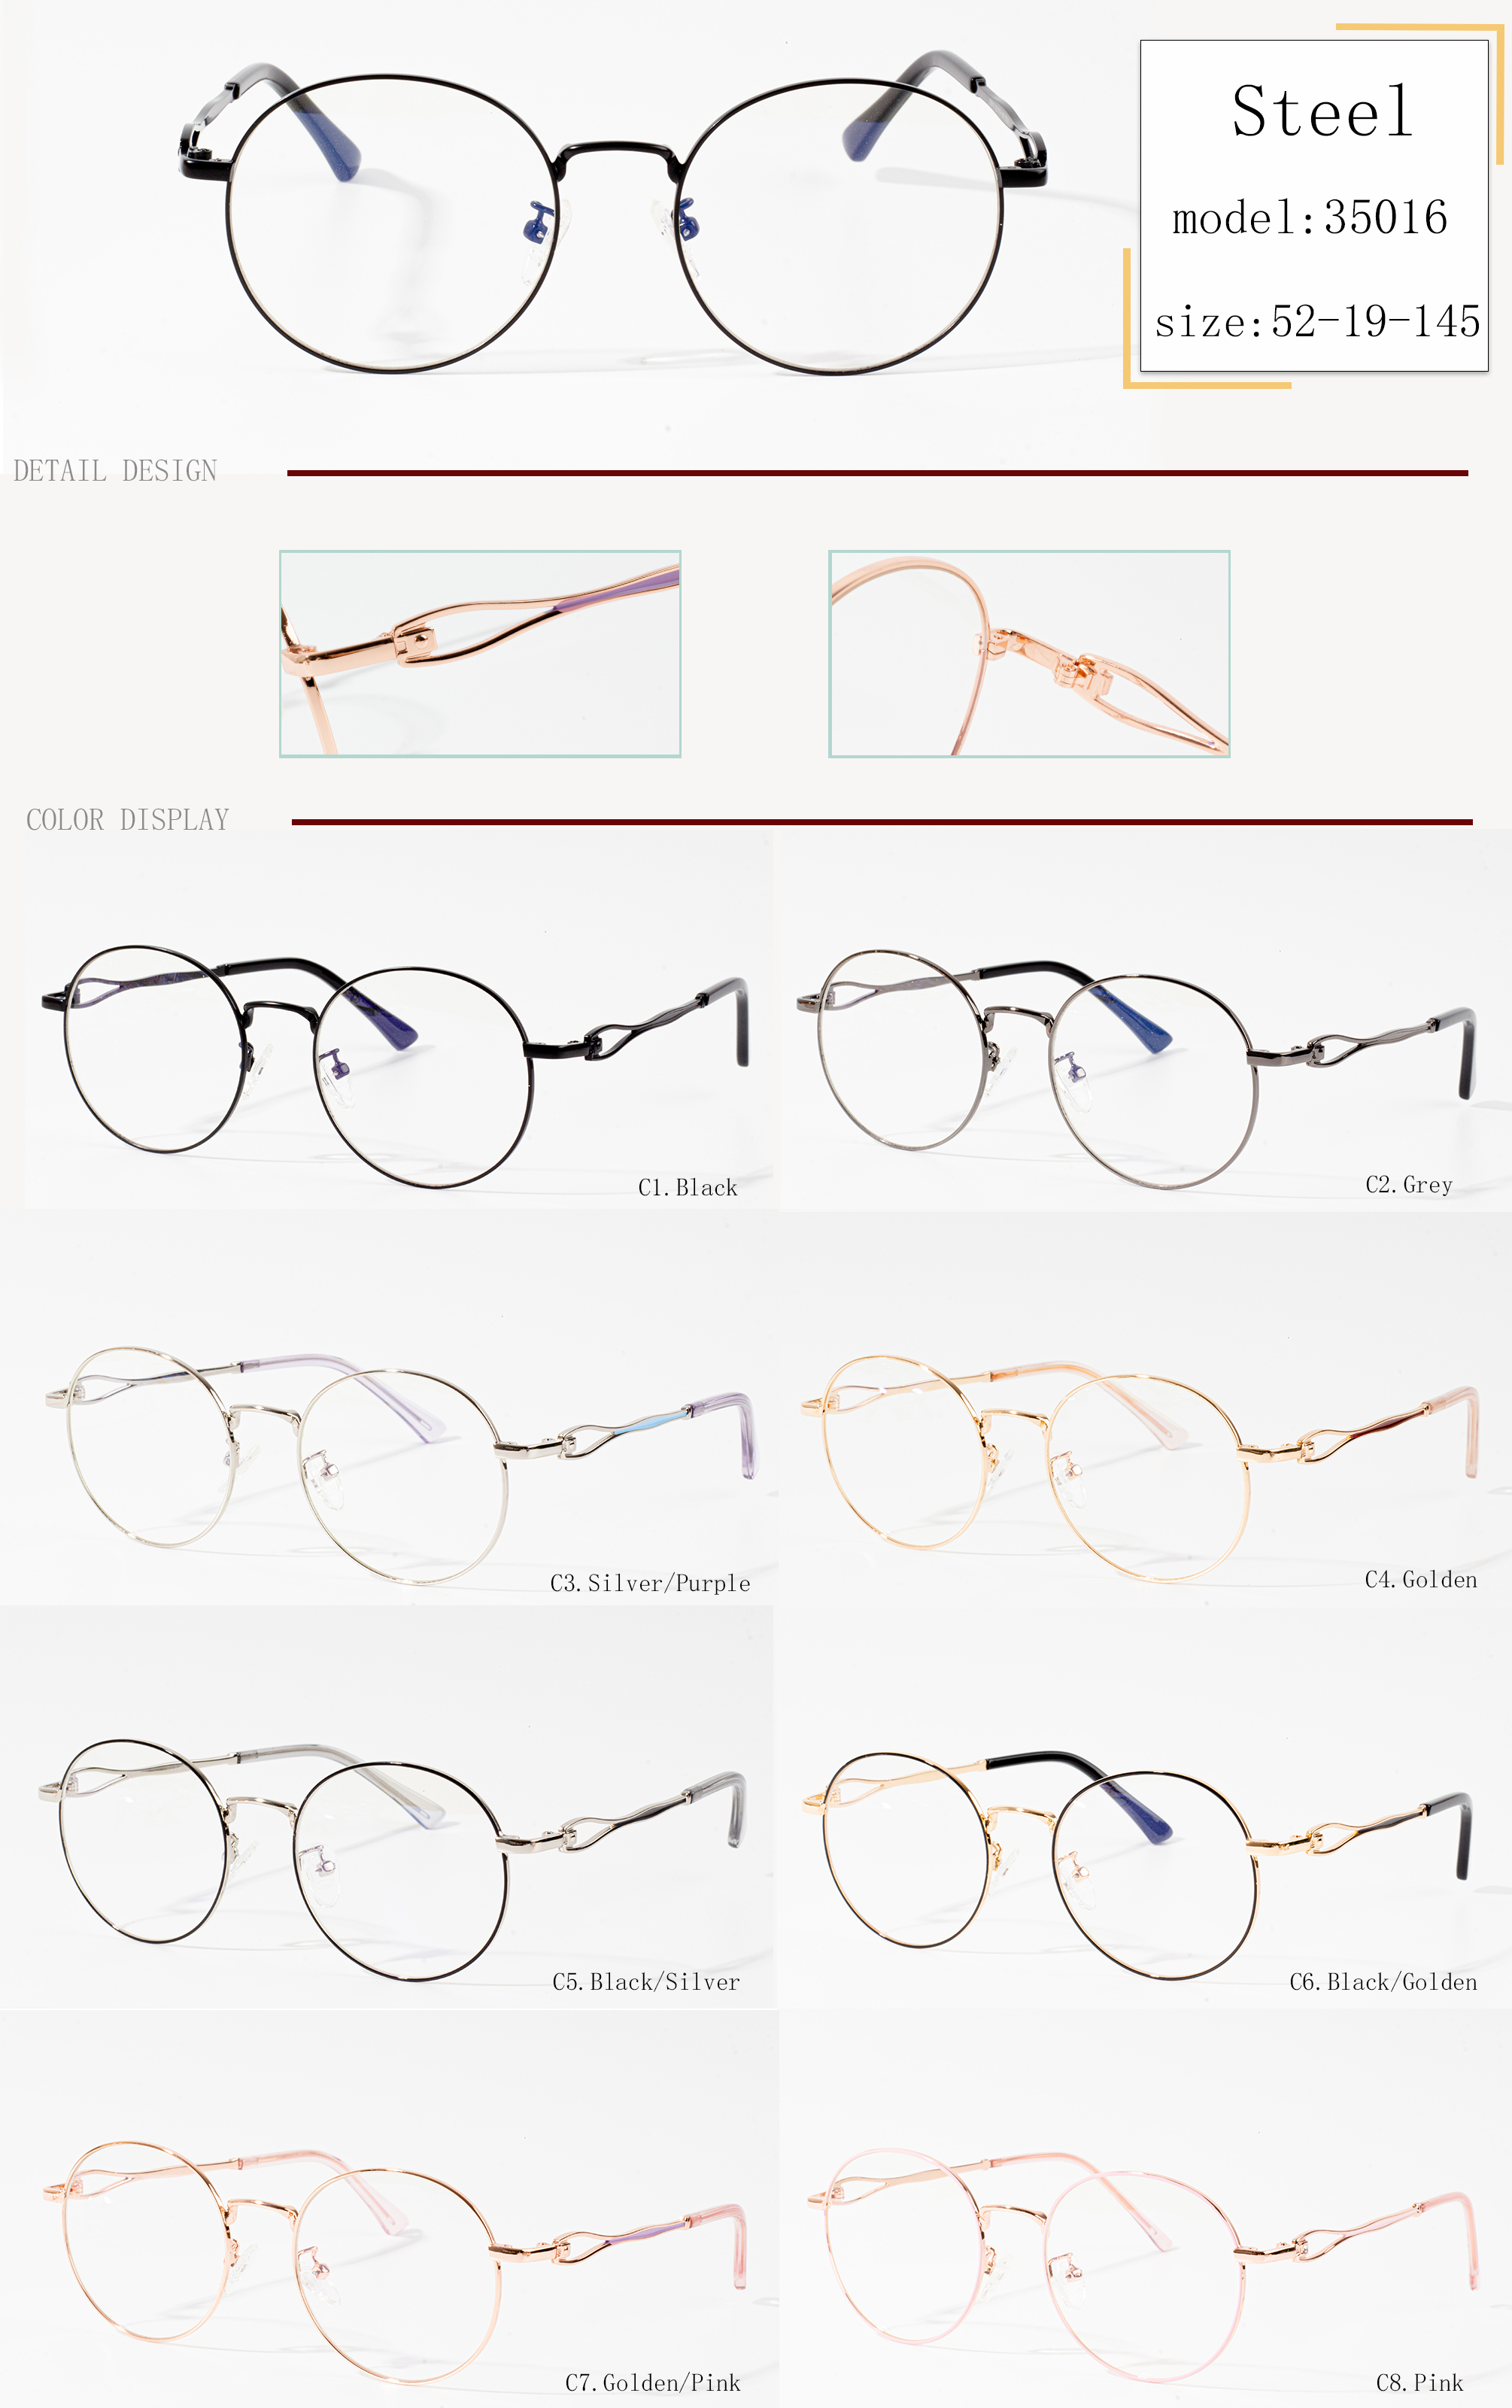 populiarūs akinių rėmeliai